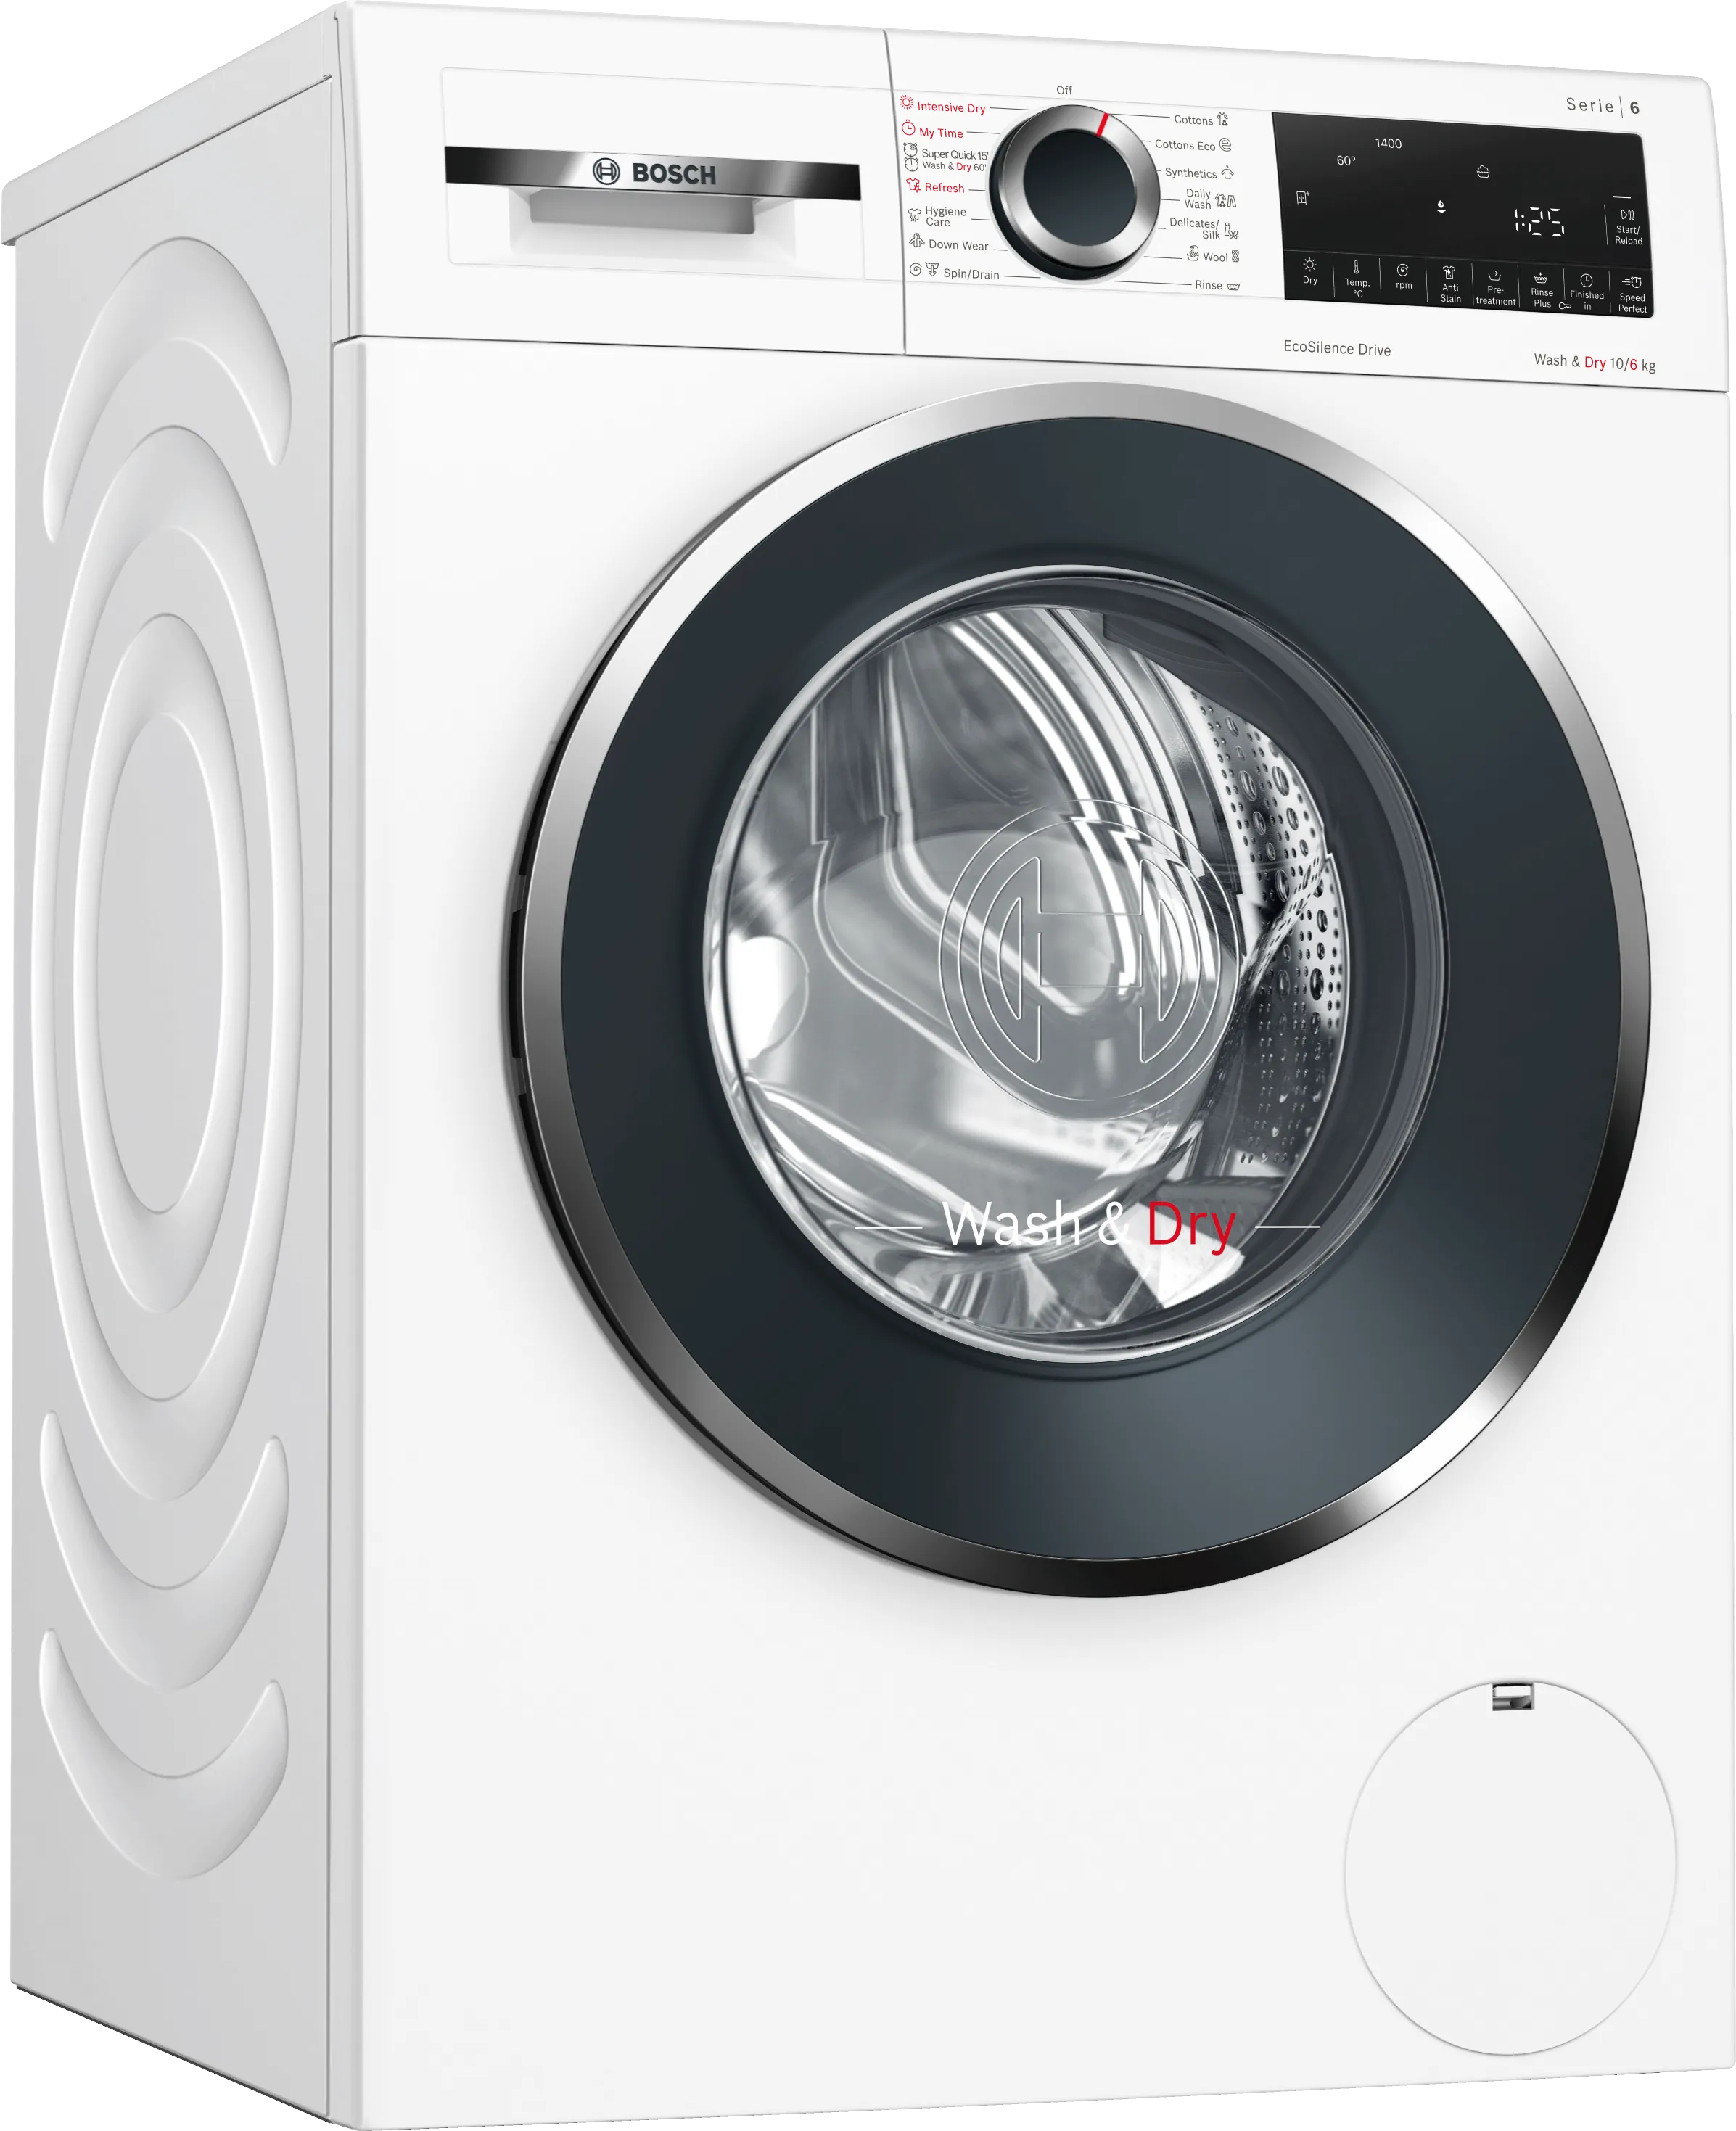 Series 6 Washer-dryer 10/6 kg 1400 rpm 